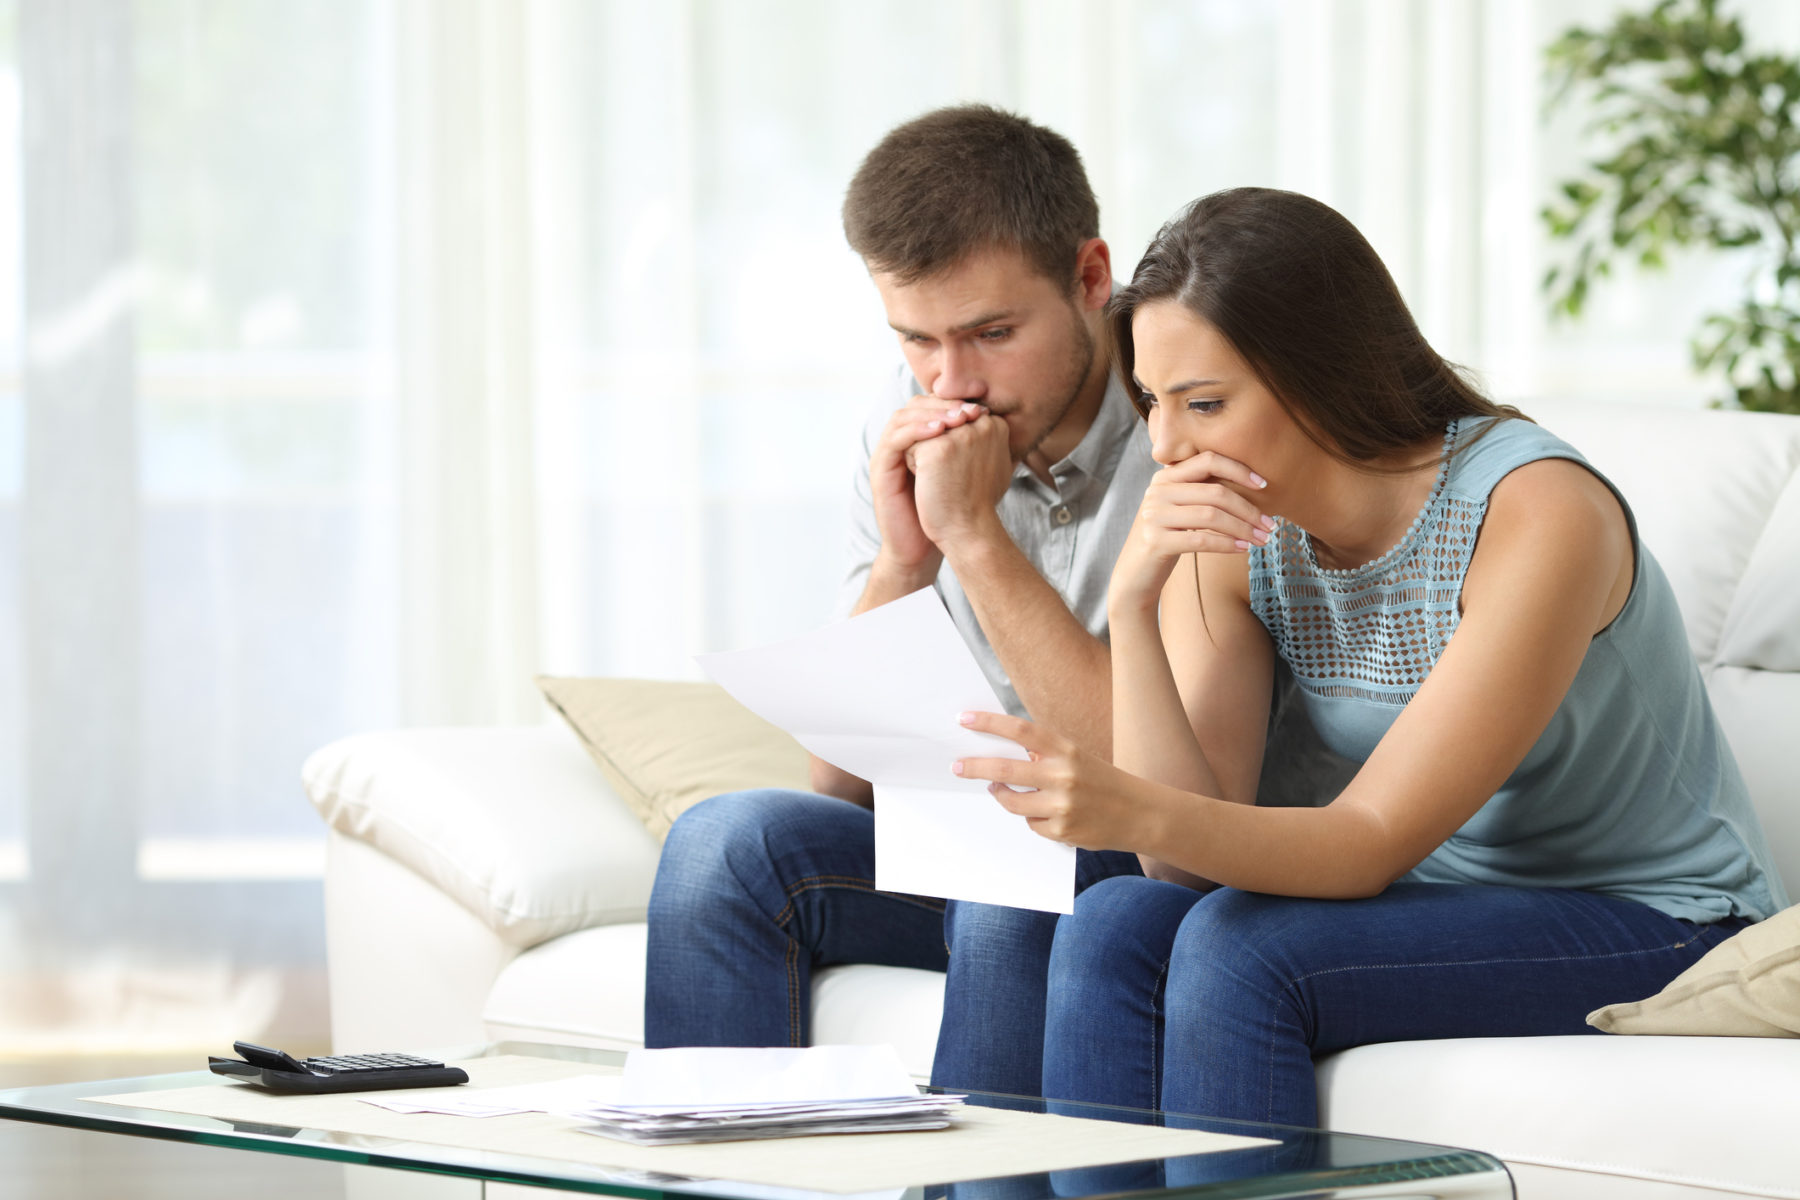 Un couple, assis sur leur canapé, regarde un document avec inquiétude